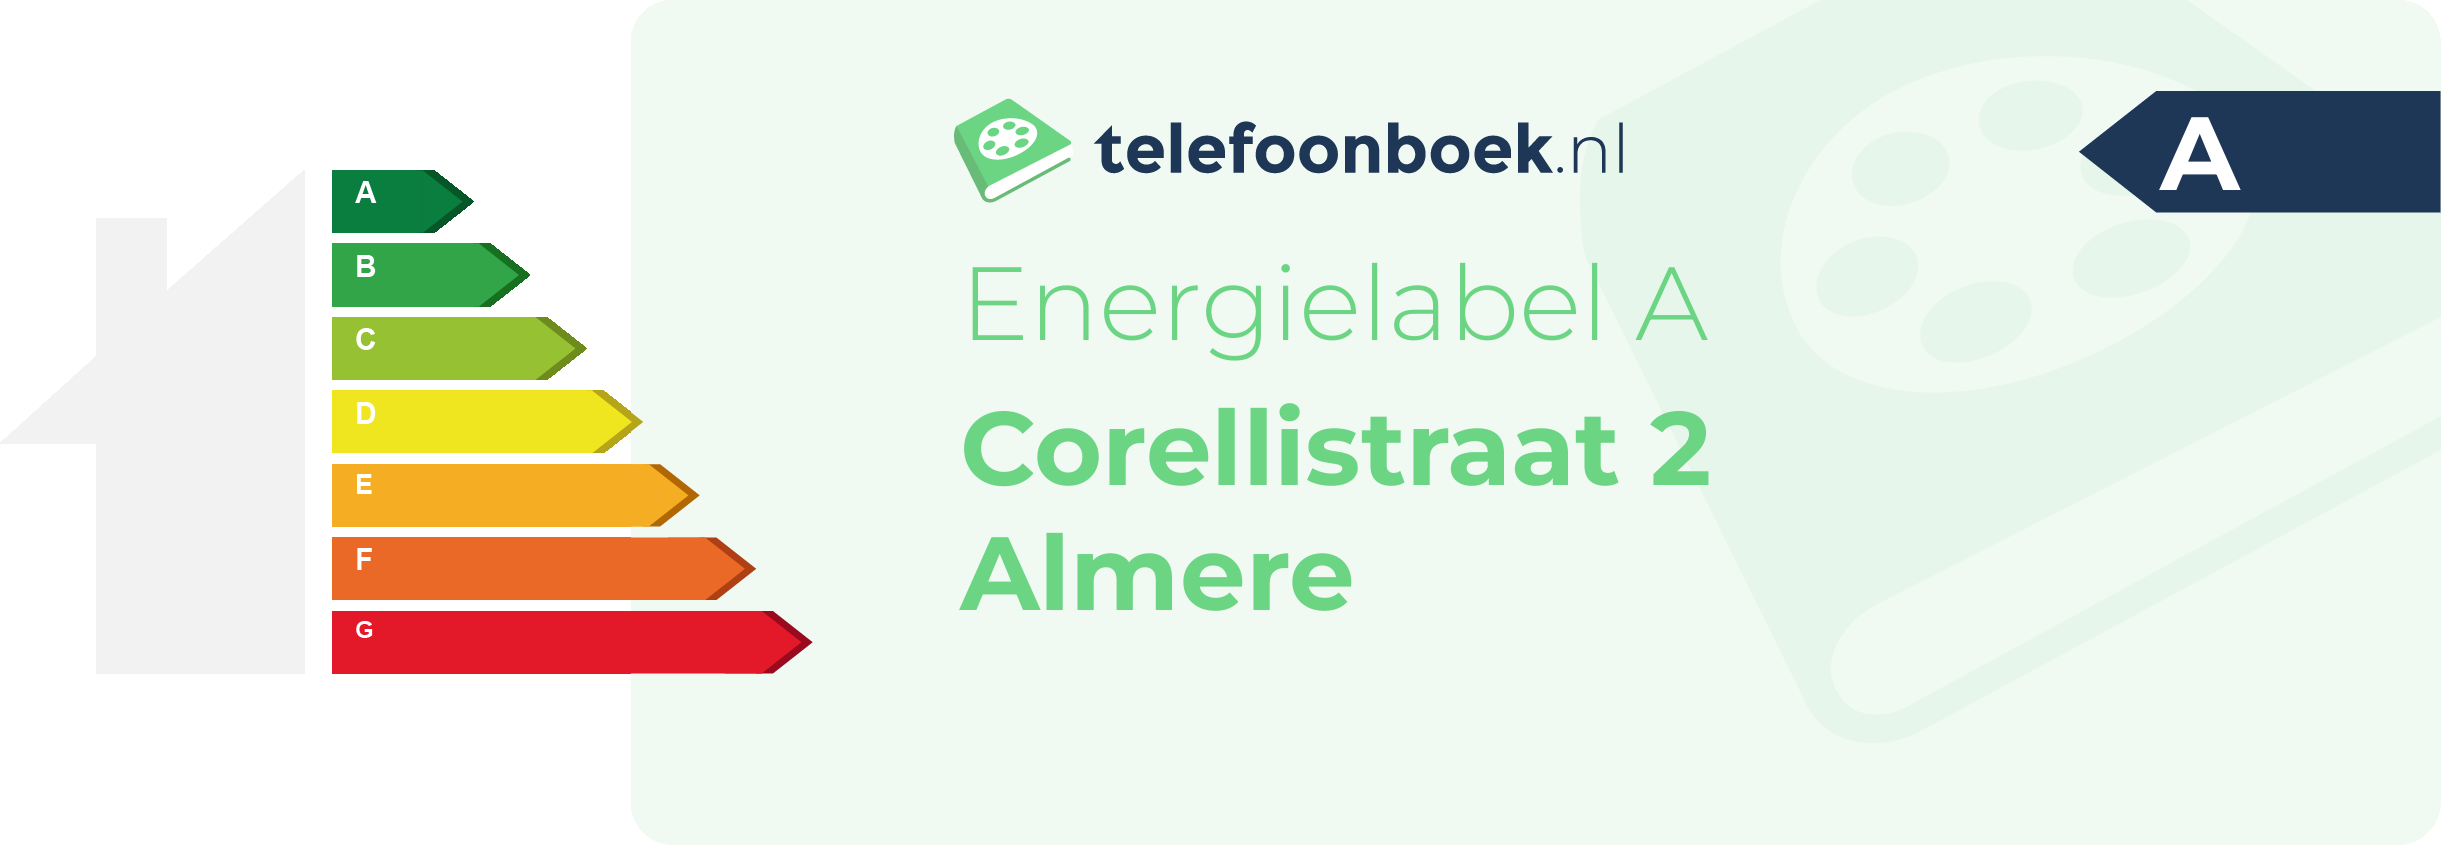 Energielabel Corellistraat 2 Almere